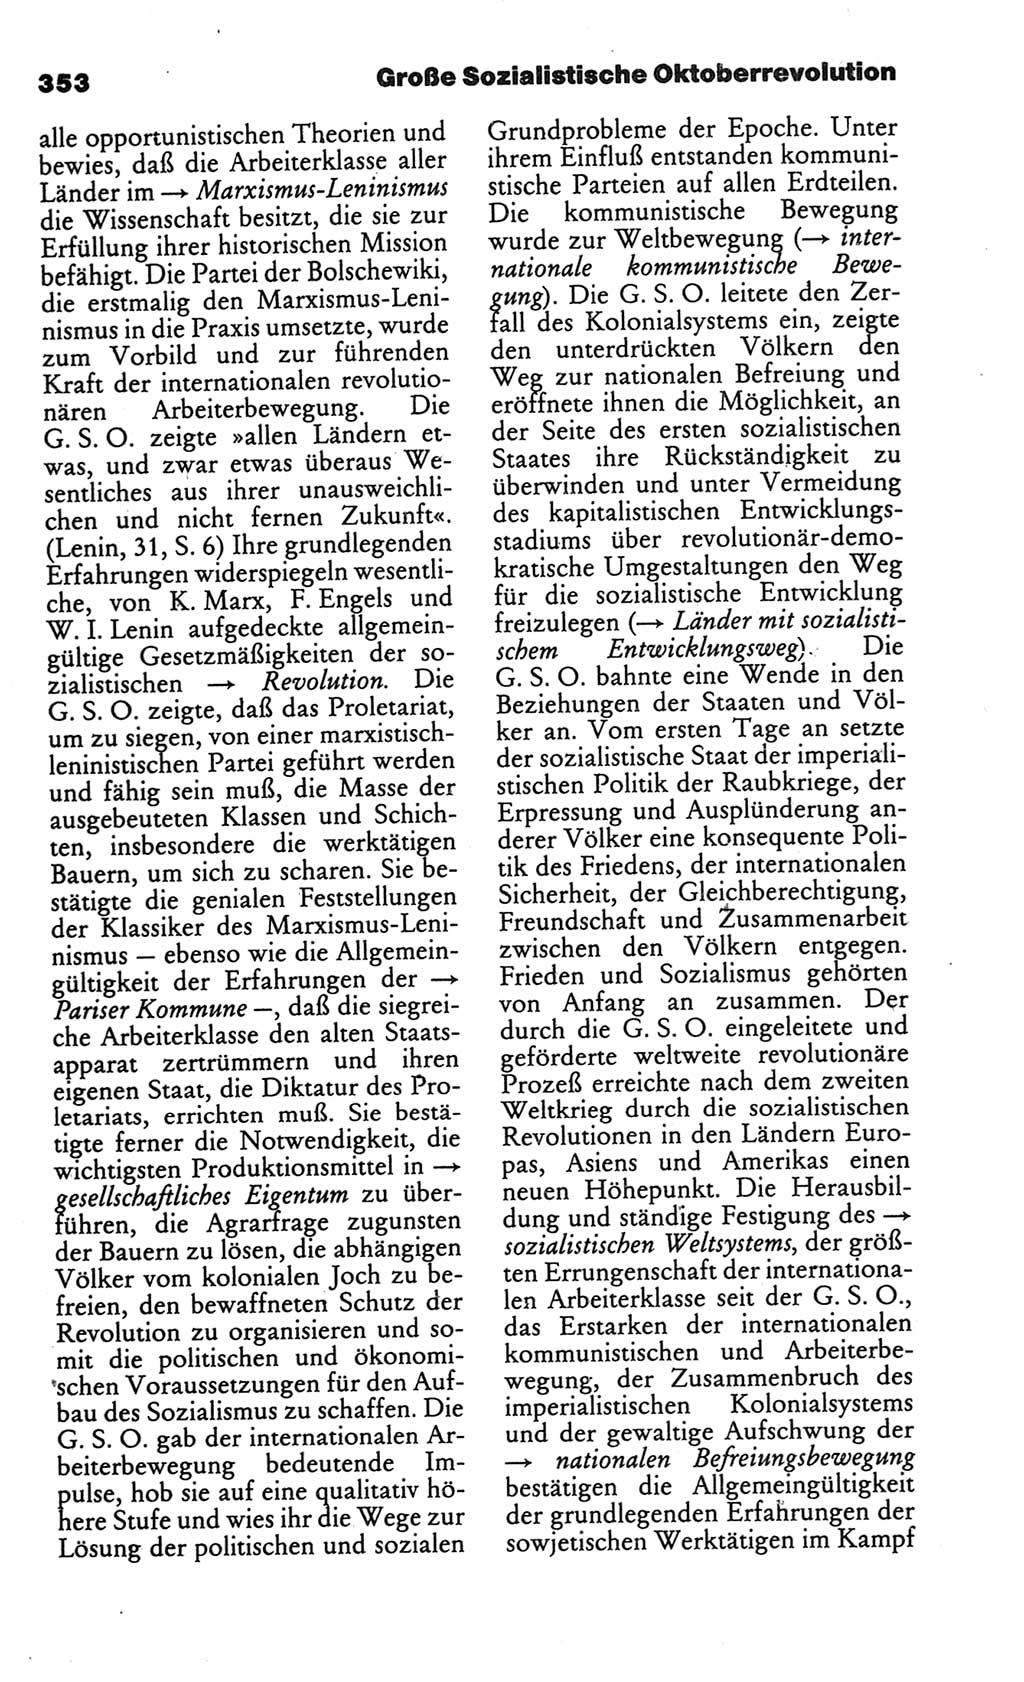 Kleines politisches Wörterbuch [Deutsche Demokratische Republik (DDR)] 1986, Seite 353 (Kl. pol. Wb. DDR 1986, S. 353)